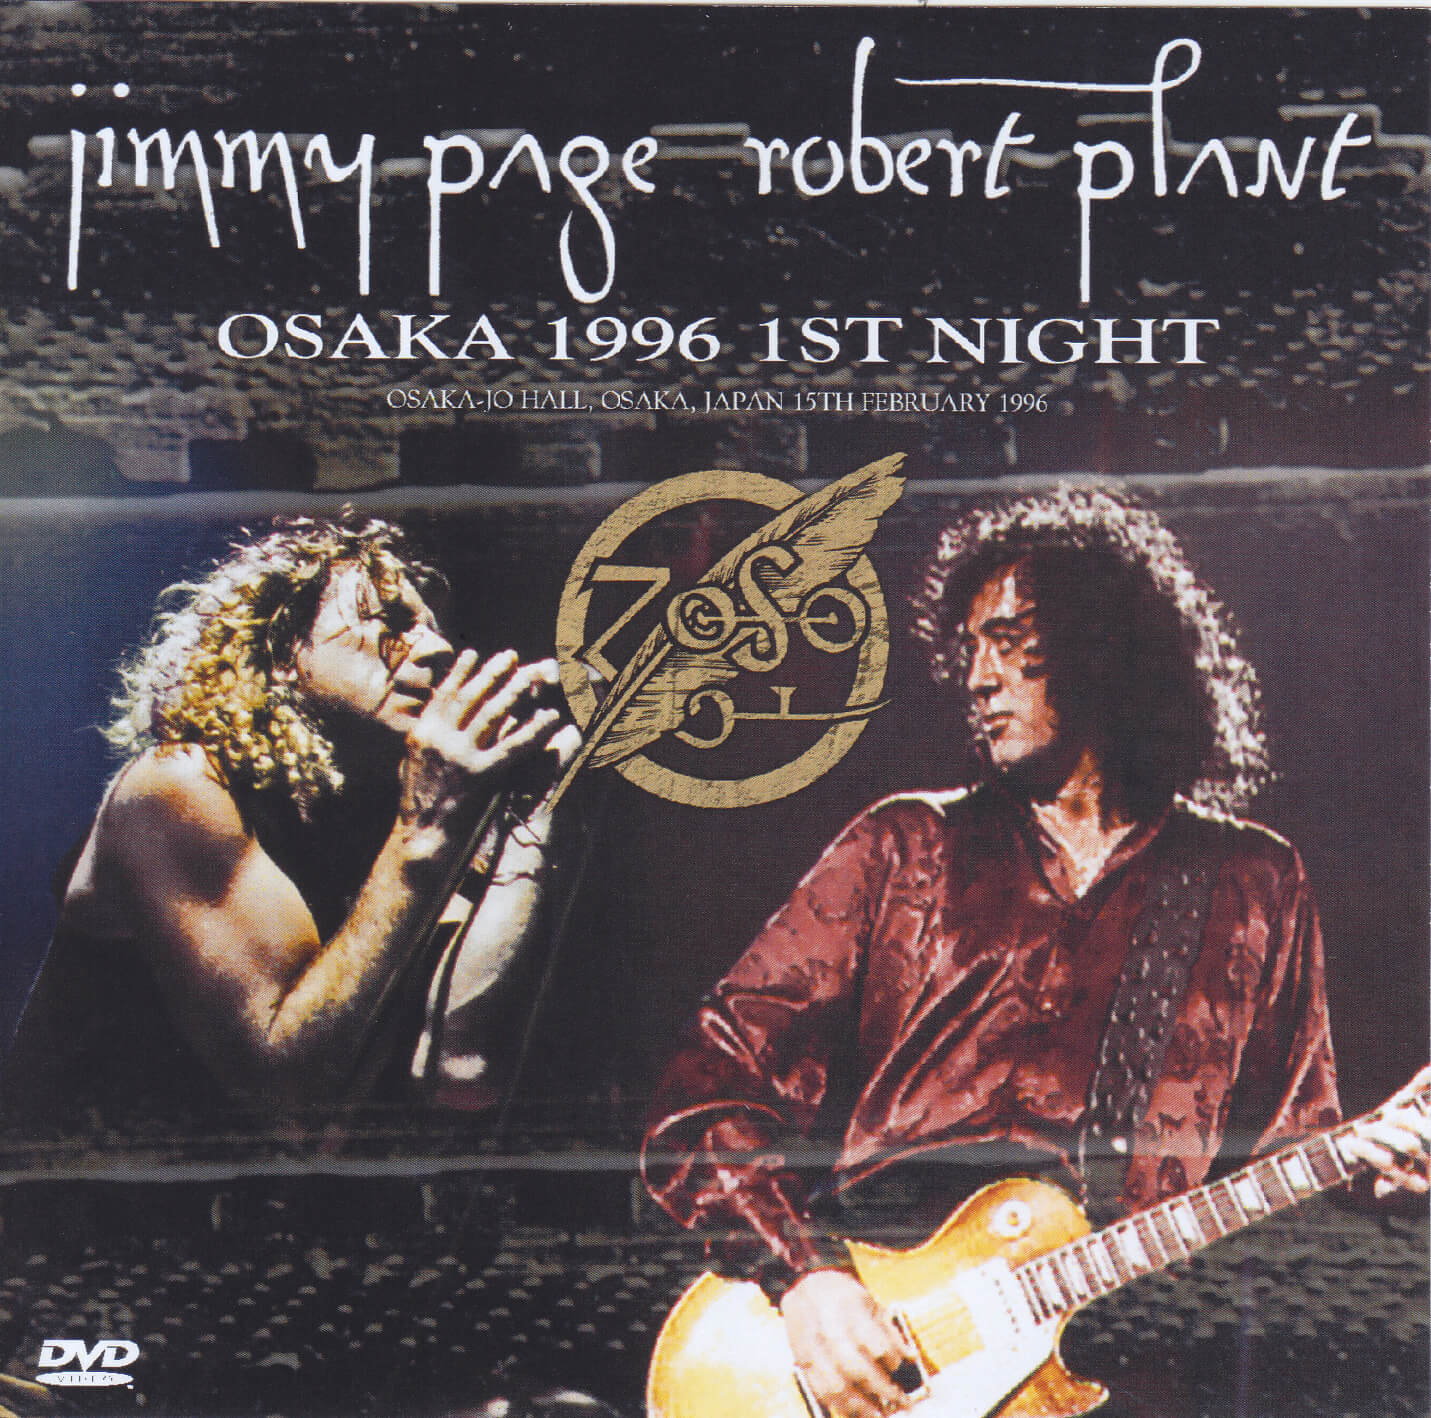 Jimmy Page & Robert Plant / Osaka 1996 1st Night Dat Master / 2CD+